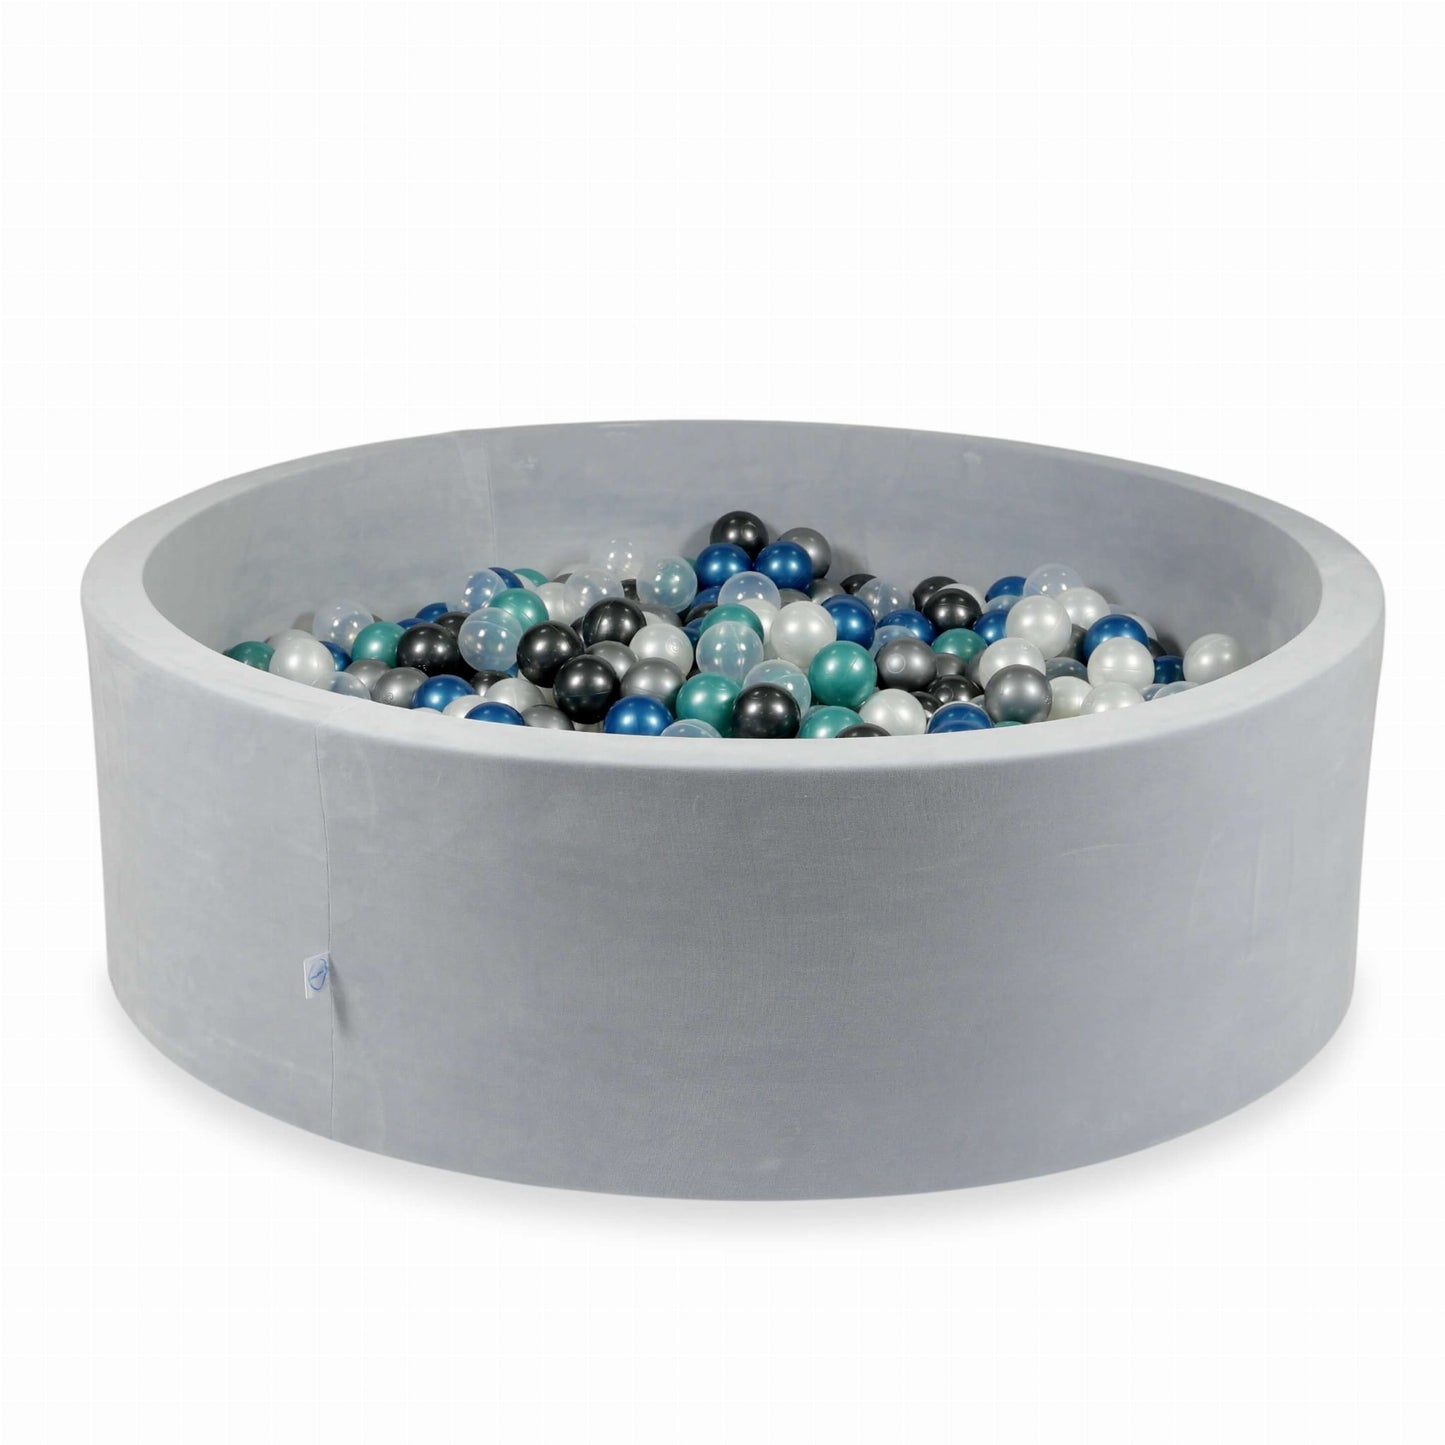 Piscine à Balles 130x40 Velvet Soft gris clair avec balles 700 pcs (turquoise métallique, bleu métallique, argent, graphite métallique, transparent, perle)